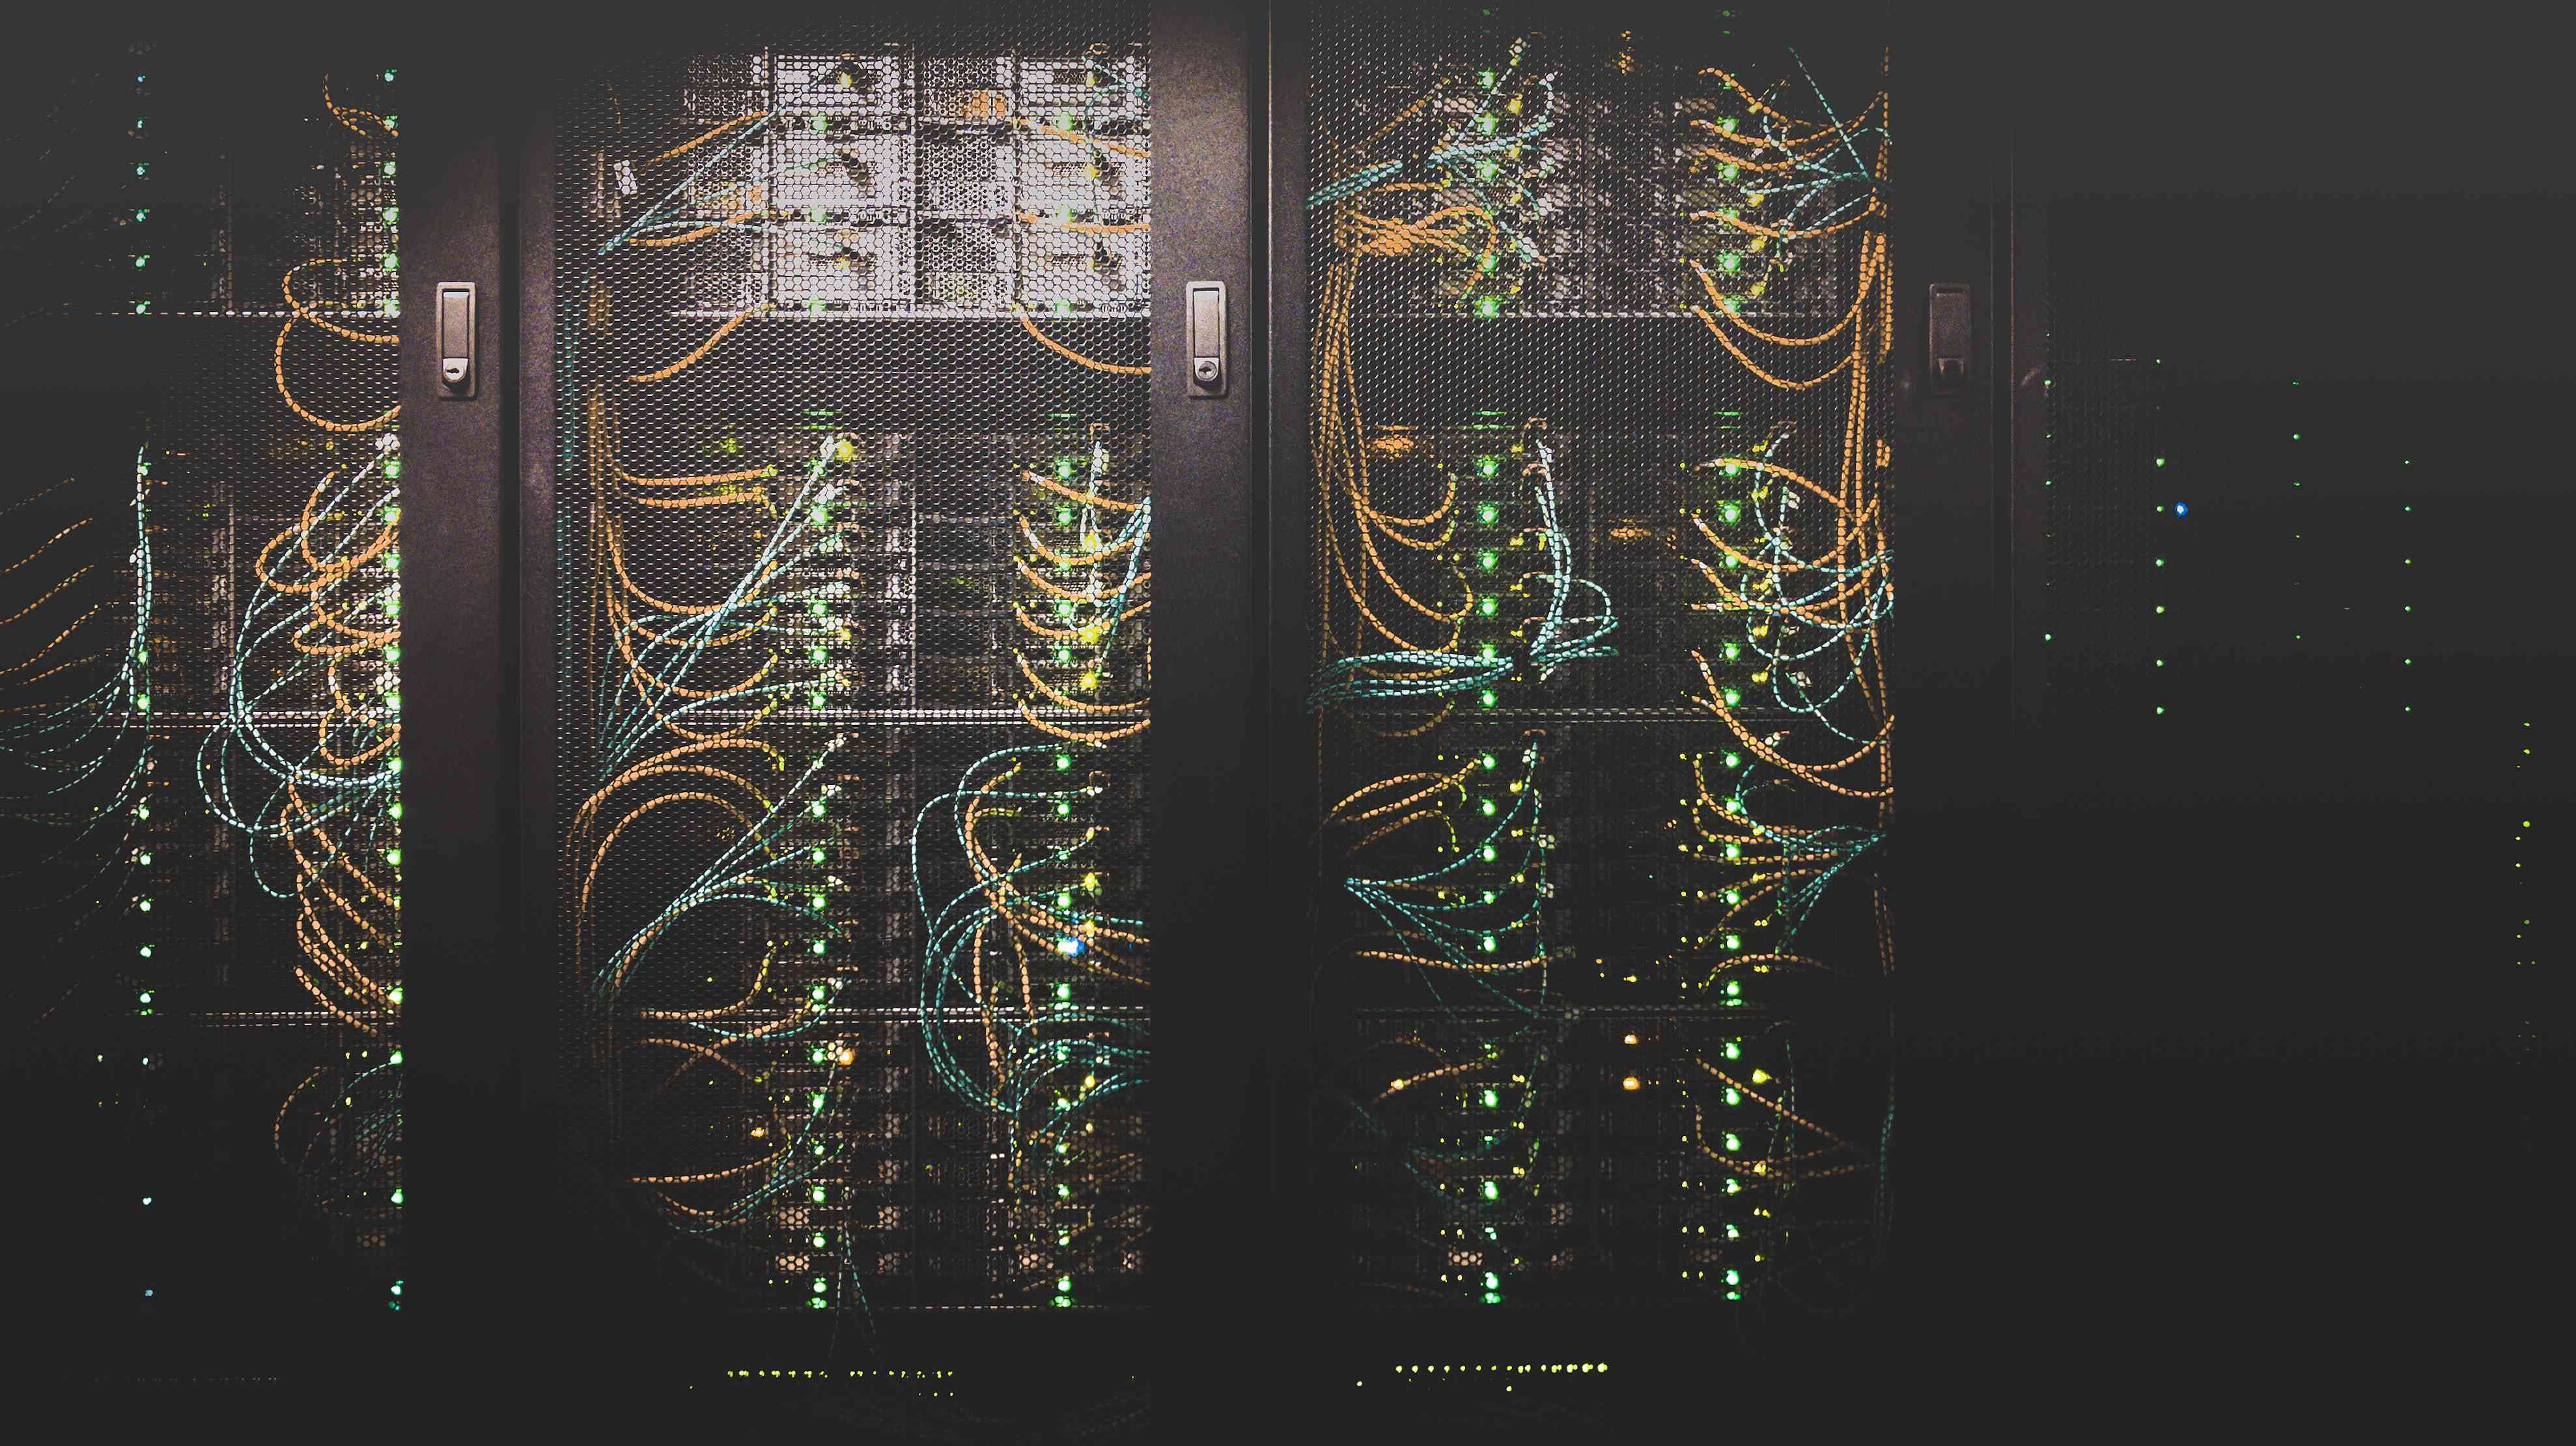 Datacenter racks